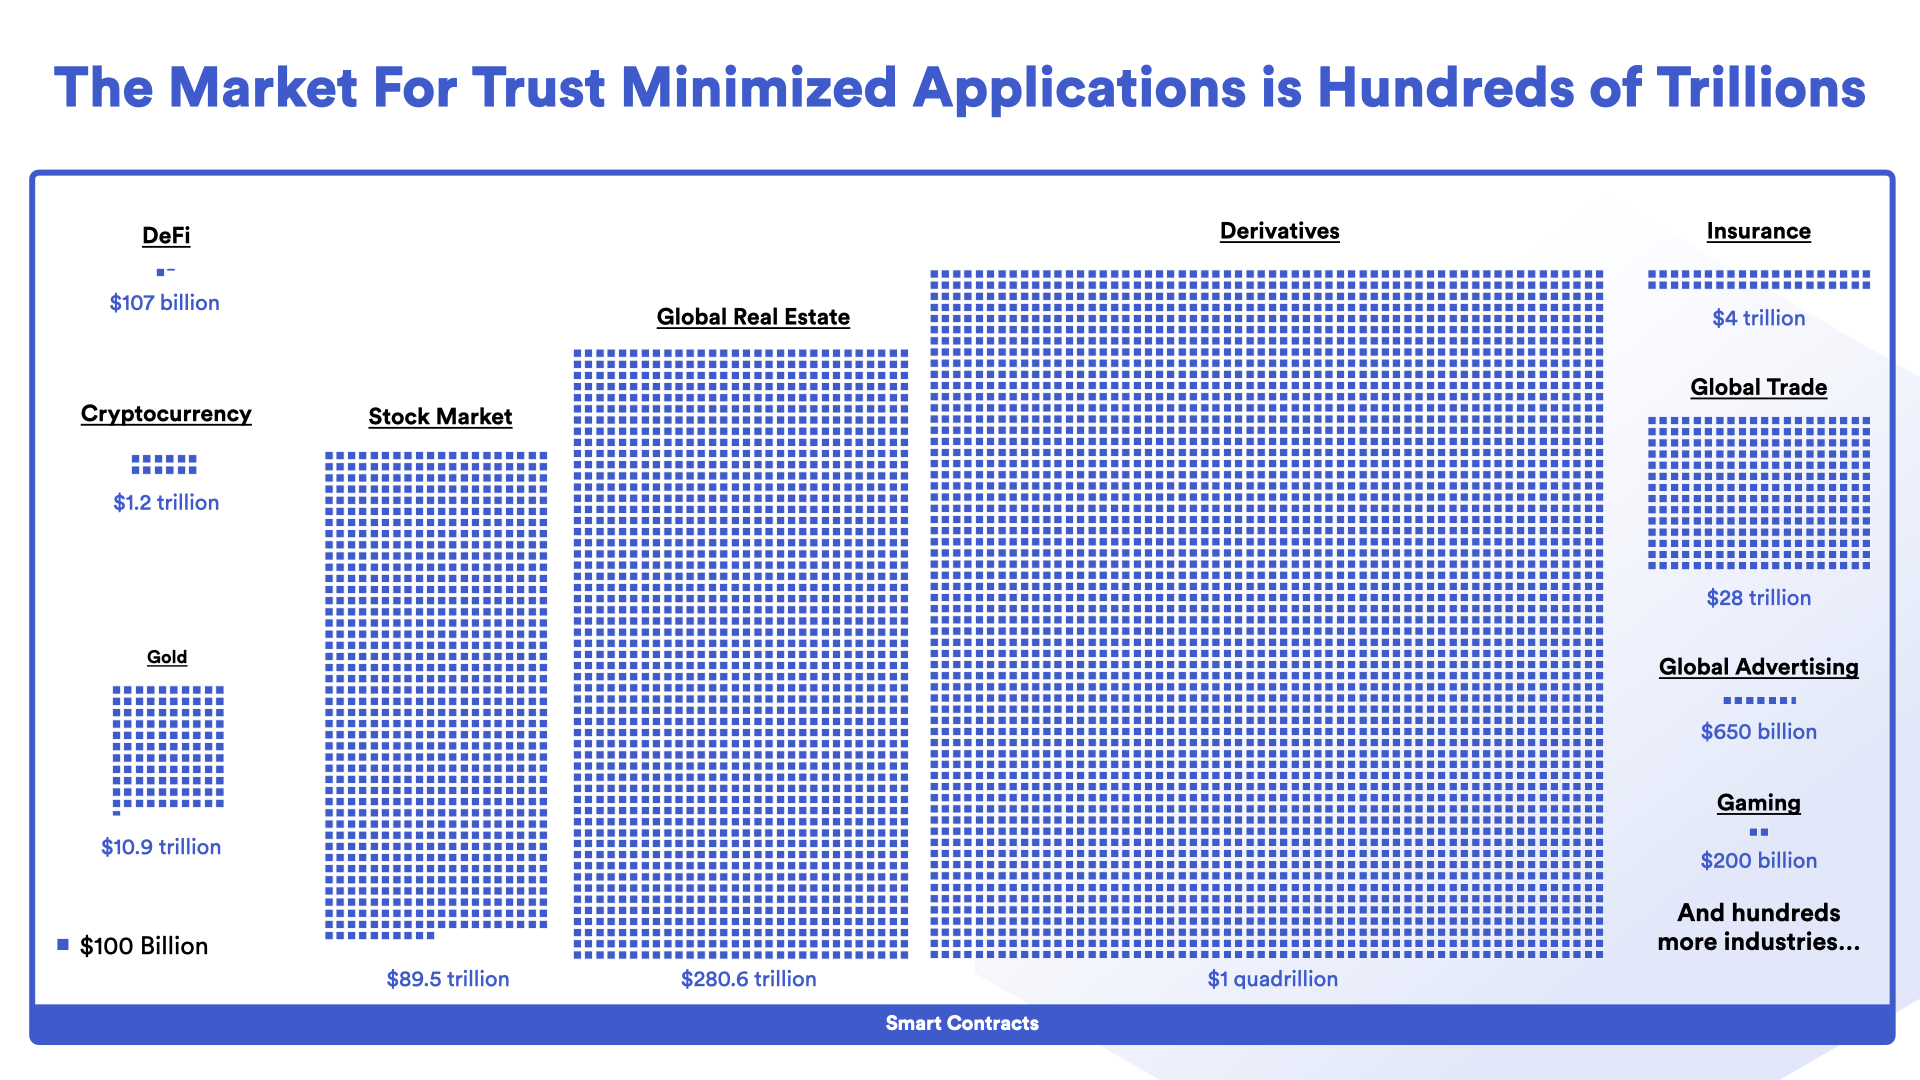 信任最小化应用将有望撬动数百万亿美元的市场。